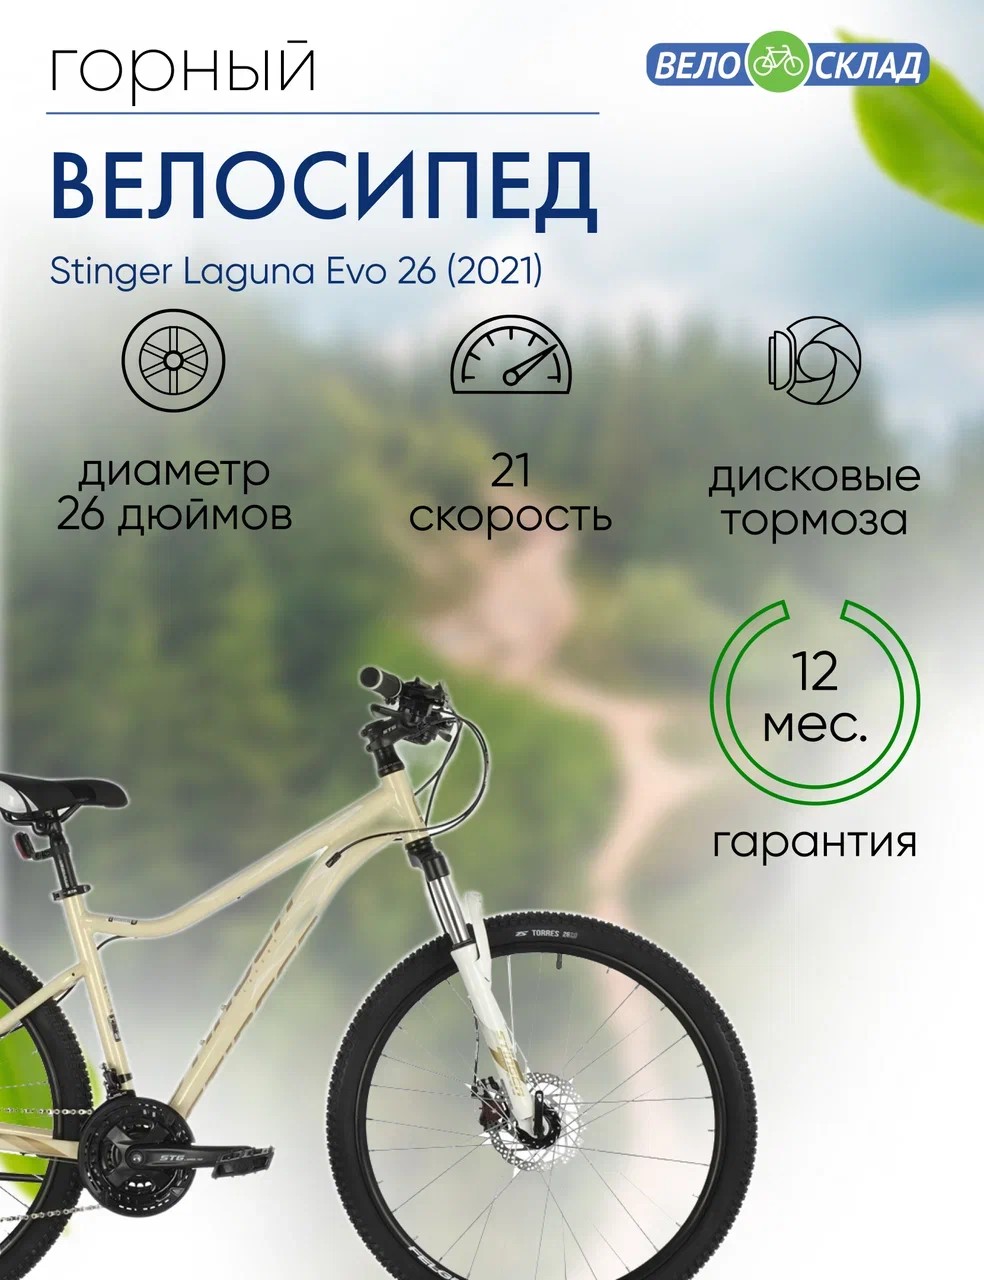 Женский велосипед Stinger Laguna Evo 26, год 2021, цвет Желтый, ростовка 15